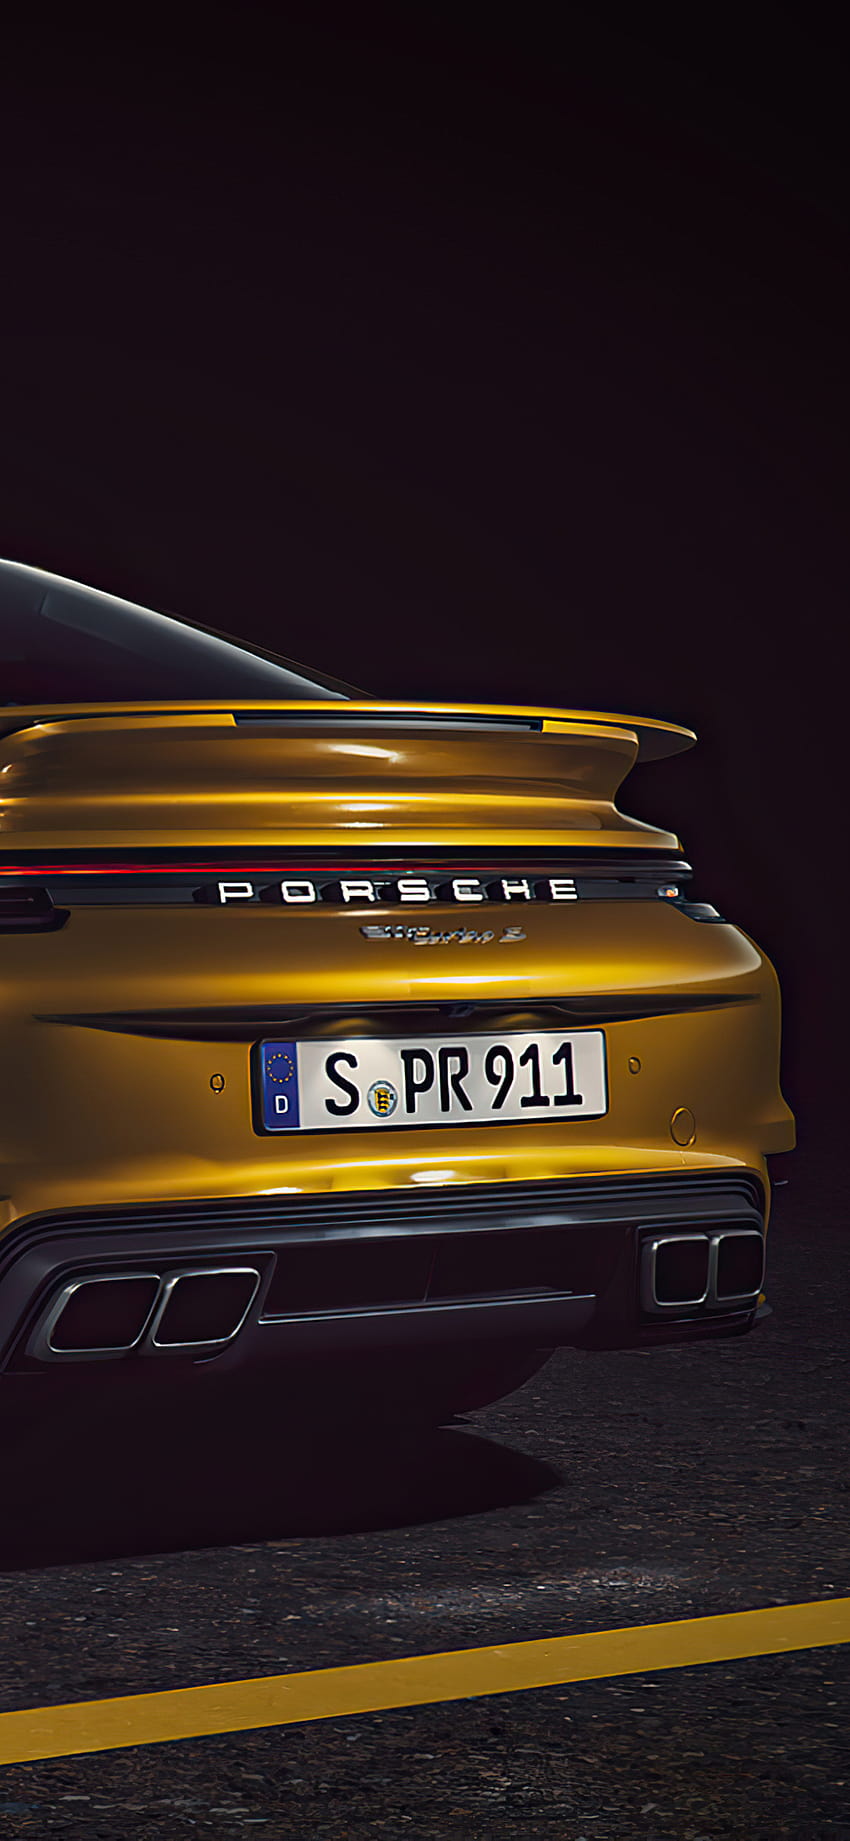 Thiết kế độc đáo và hoàn hảo của Porsche 911 Turbo S sẽ khiến cho bạn không thể bỏ qua những hình nền tuyệt đẹp này. Với hình nền Porsche 911 Turbo S cho iPhone của chúng tôi, bạn có thể thưởng thức vẻ đẹp đầy ấn tượng trên điện thoại di động của mình.